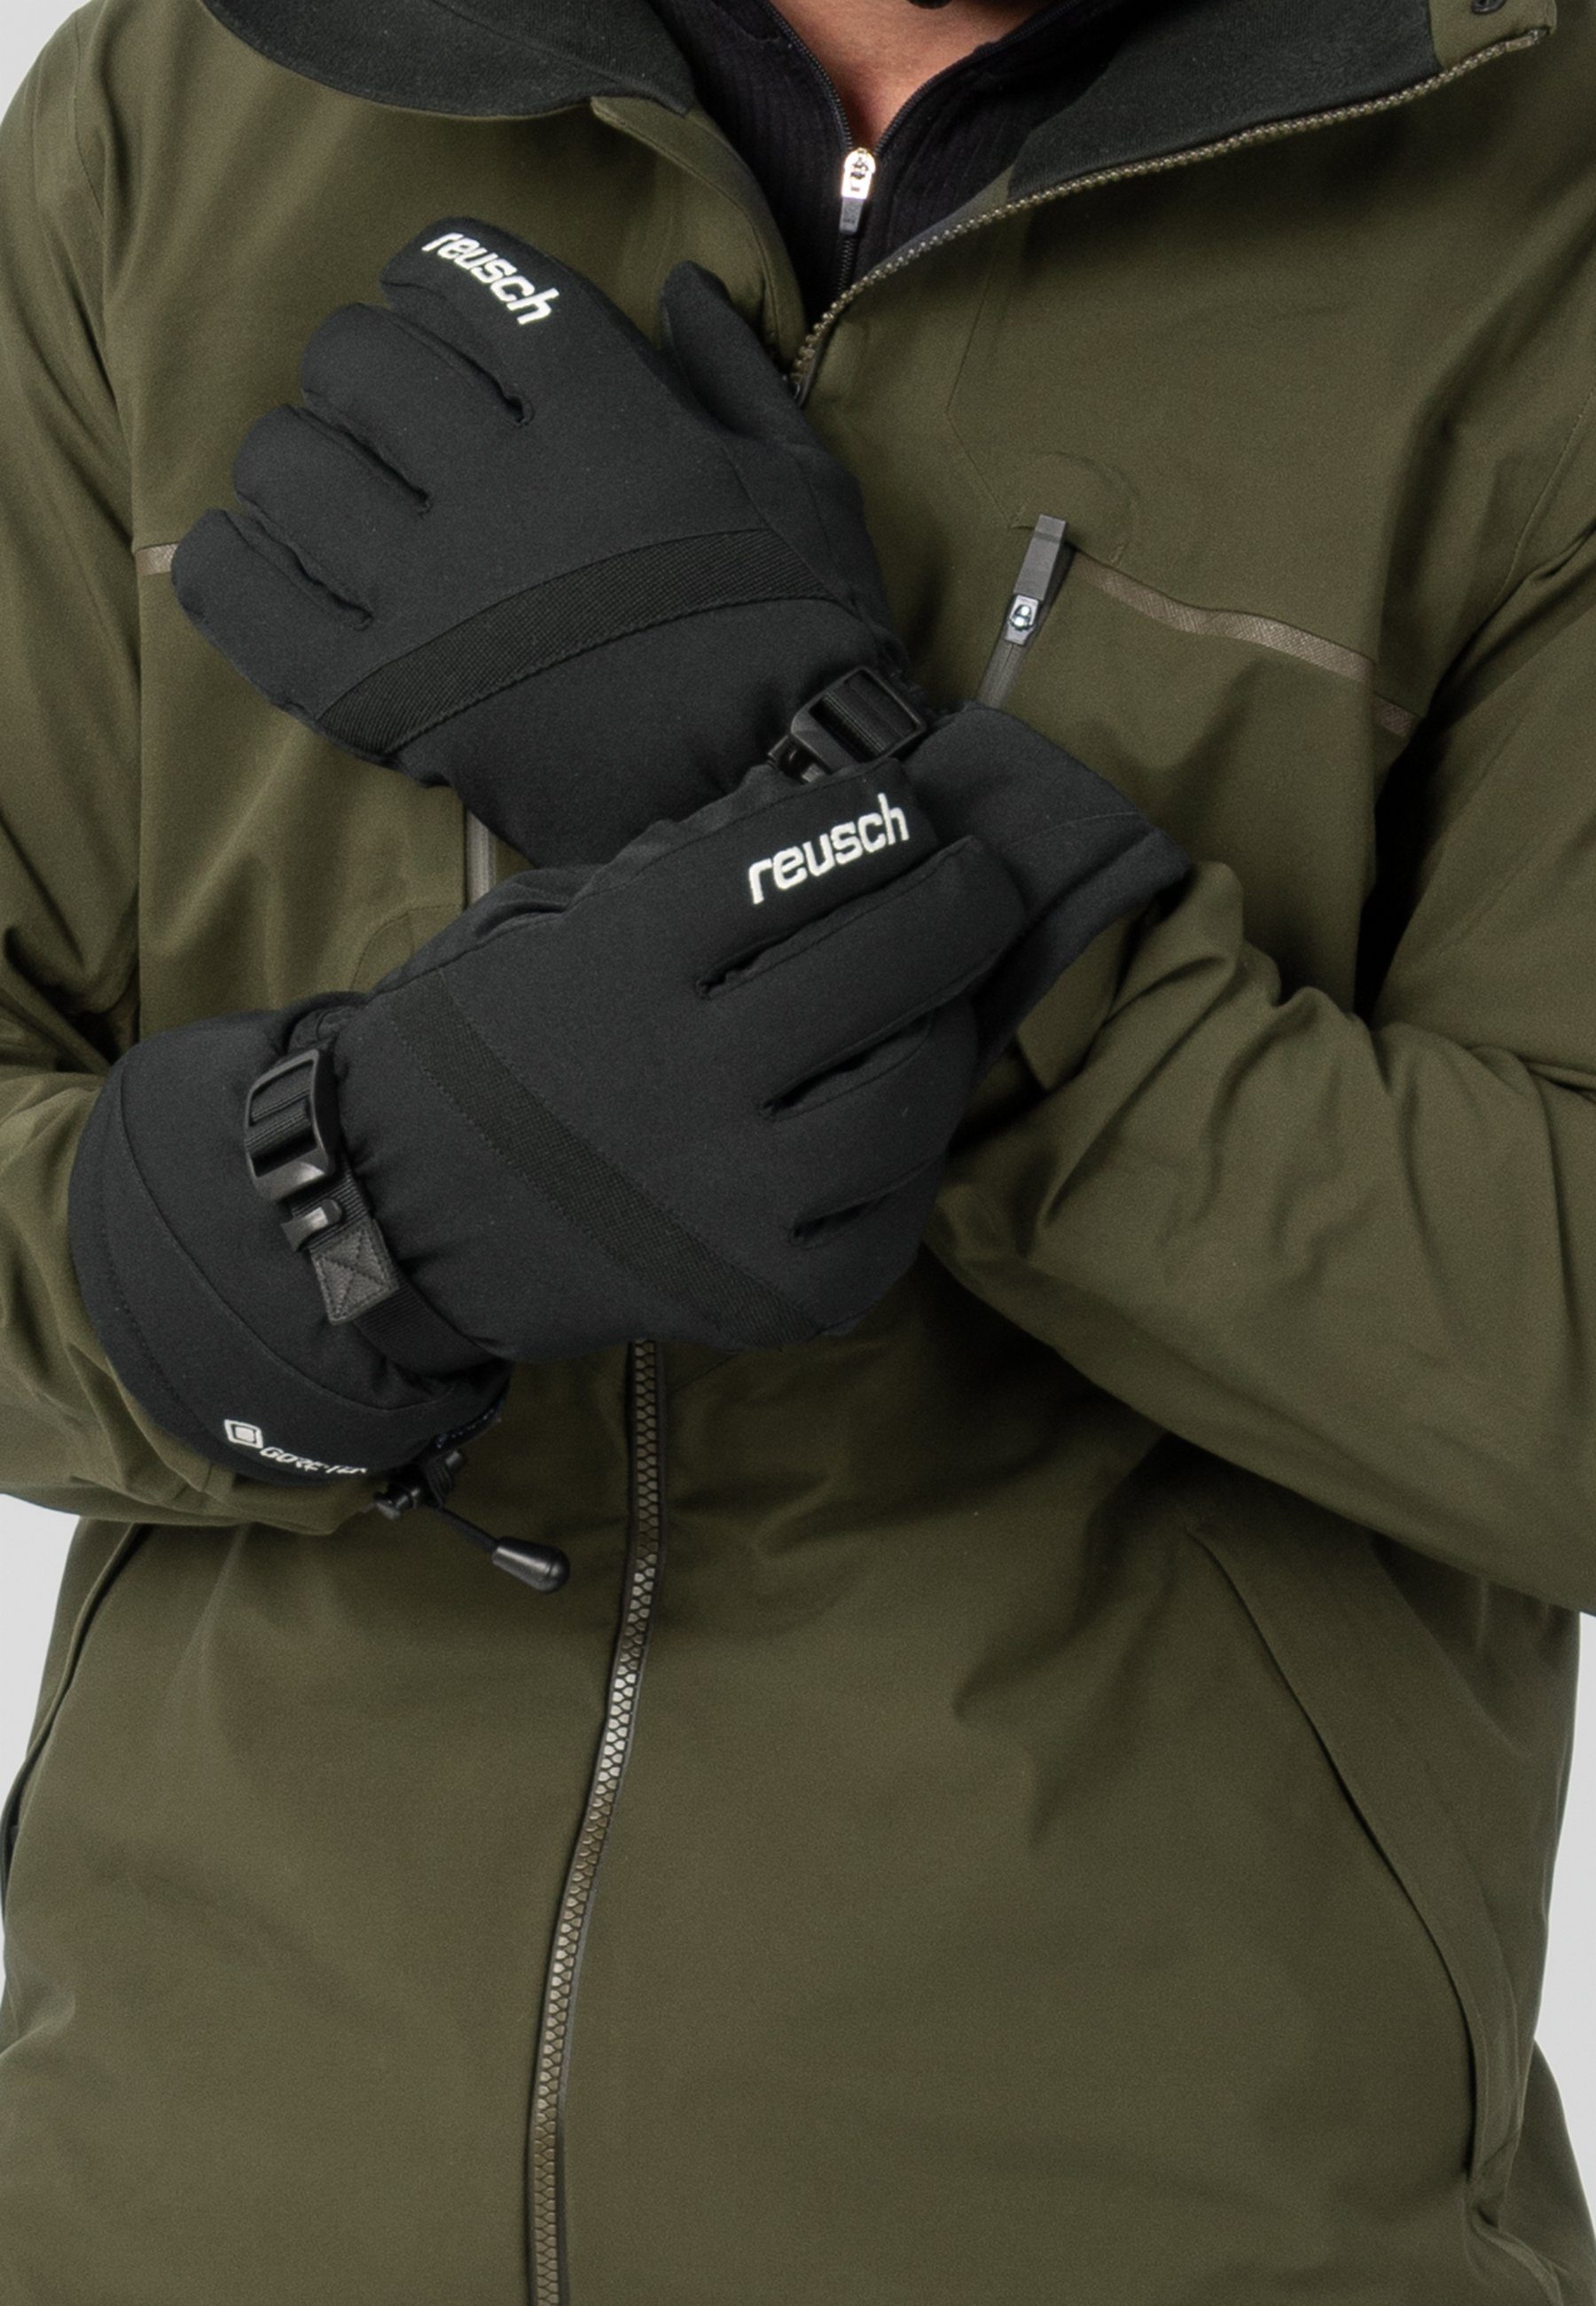 Reusch Glove wasserdichtem Skihandschuhe Warm atmungsaktivem Material und Winter aus GORE-TEX